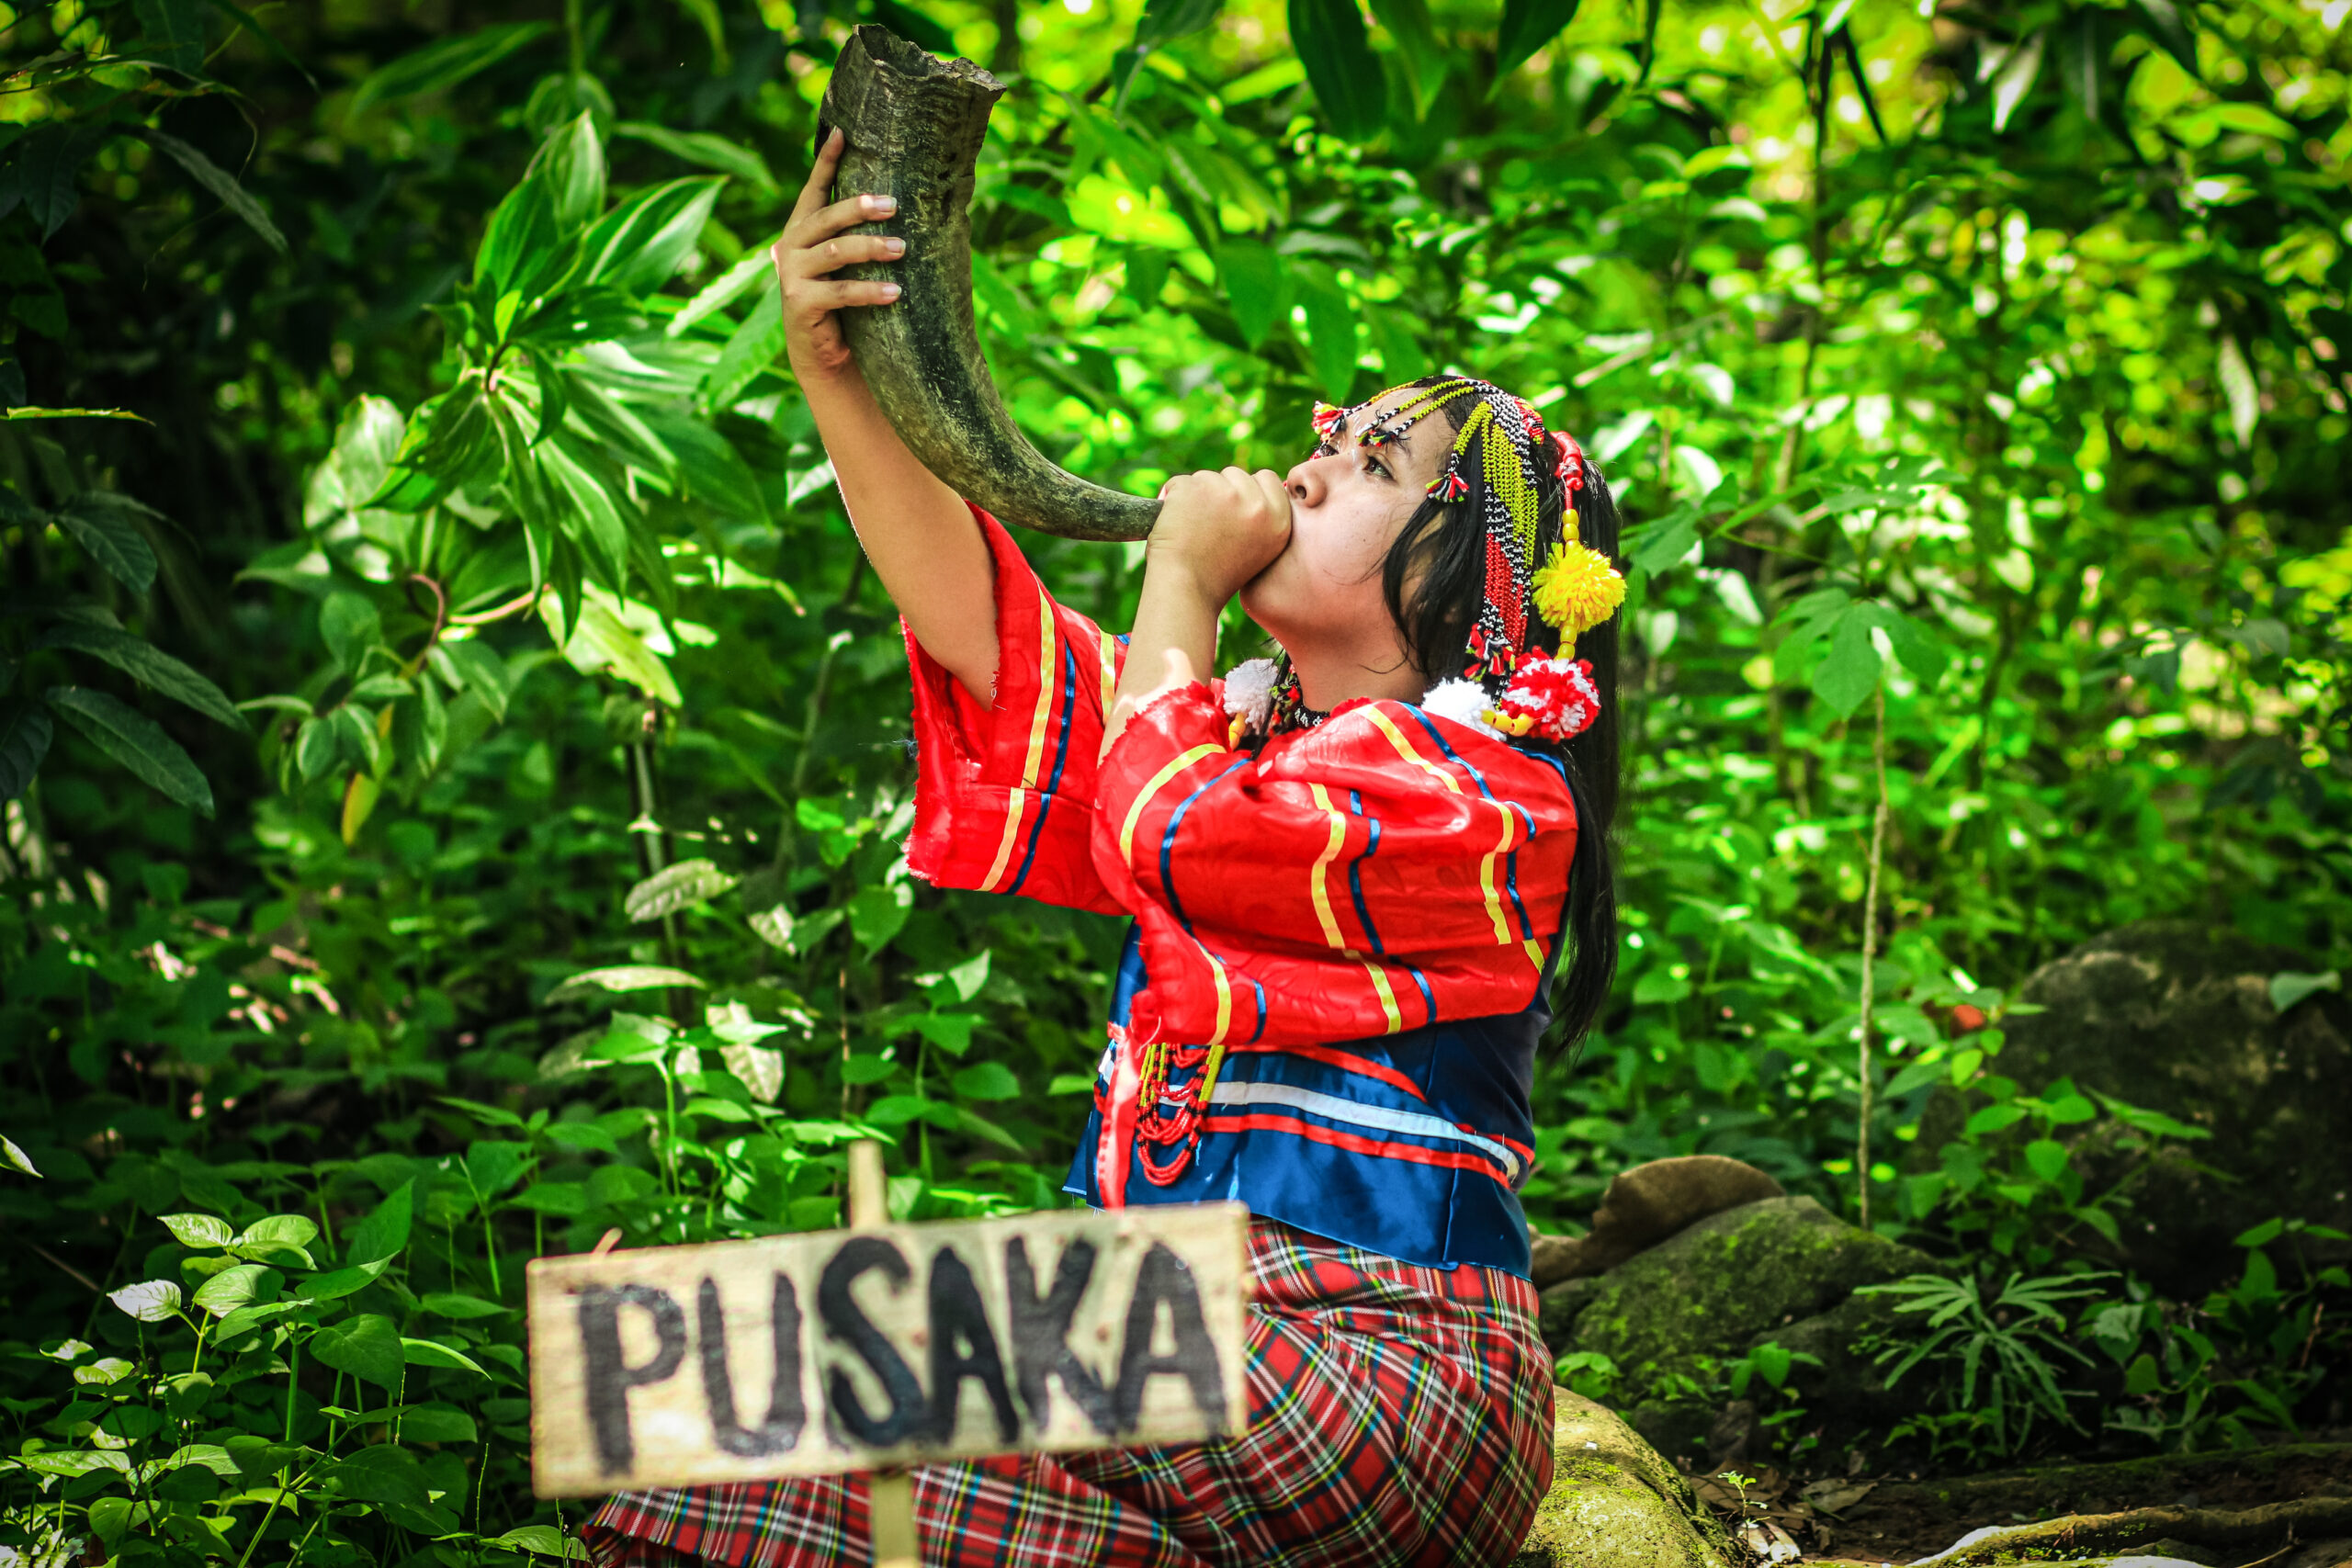 Joven indigena de la tribu Obu Manuvu  de Indonesia sosteniendo un cuerno para llamar a Pusaka, es espíritu del bosque. 
Ganadores del Concurso de Fotografía “Soluciones Innovadoras de Pueblos Indígenas”.
Nombre de la fotografía: Pusaka. Autor: Prince Loyd C. Besorio 